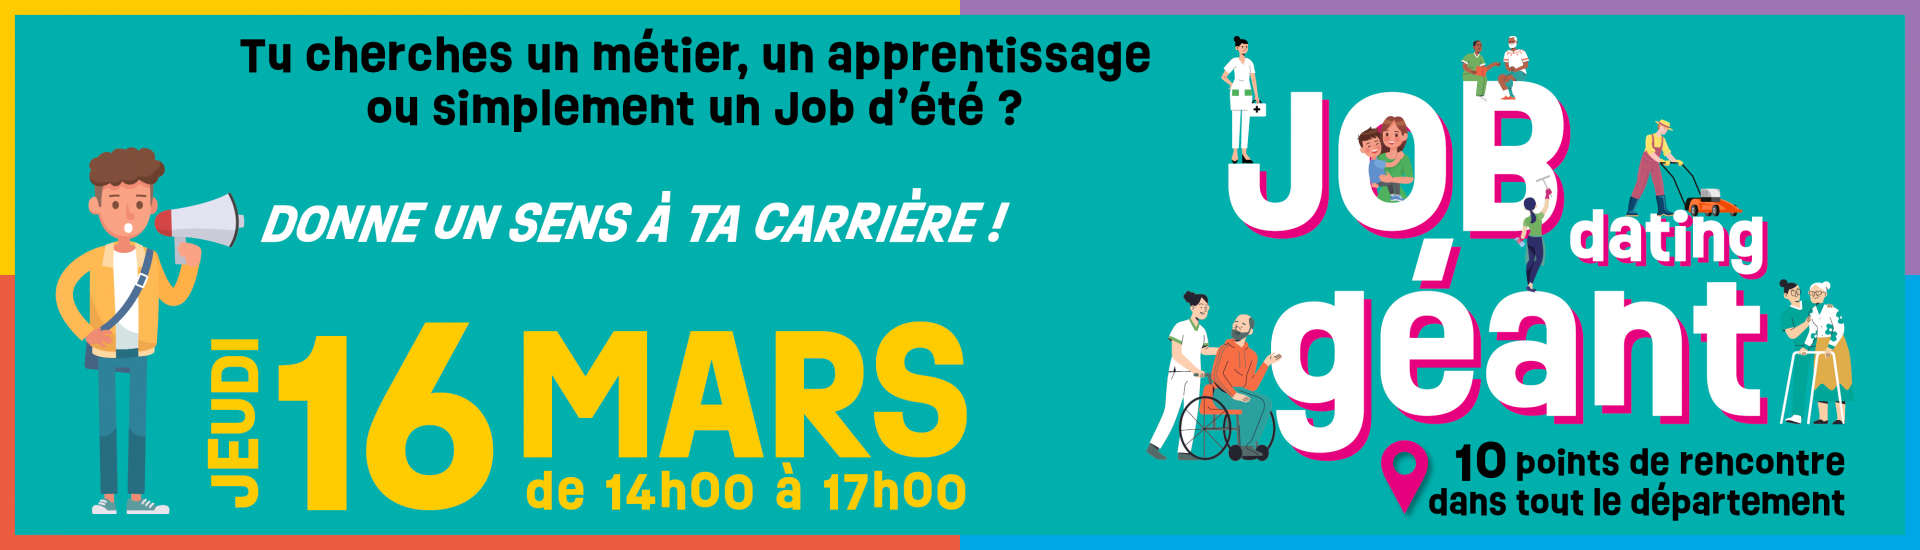 Job Dating Géant de l'ADMR du Pas-de-Calais